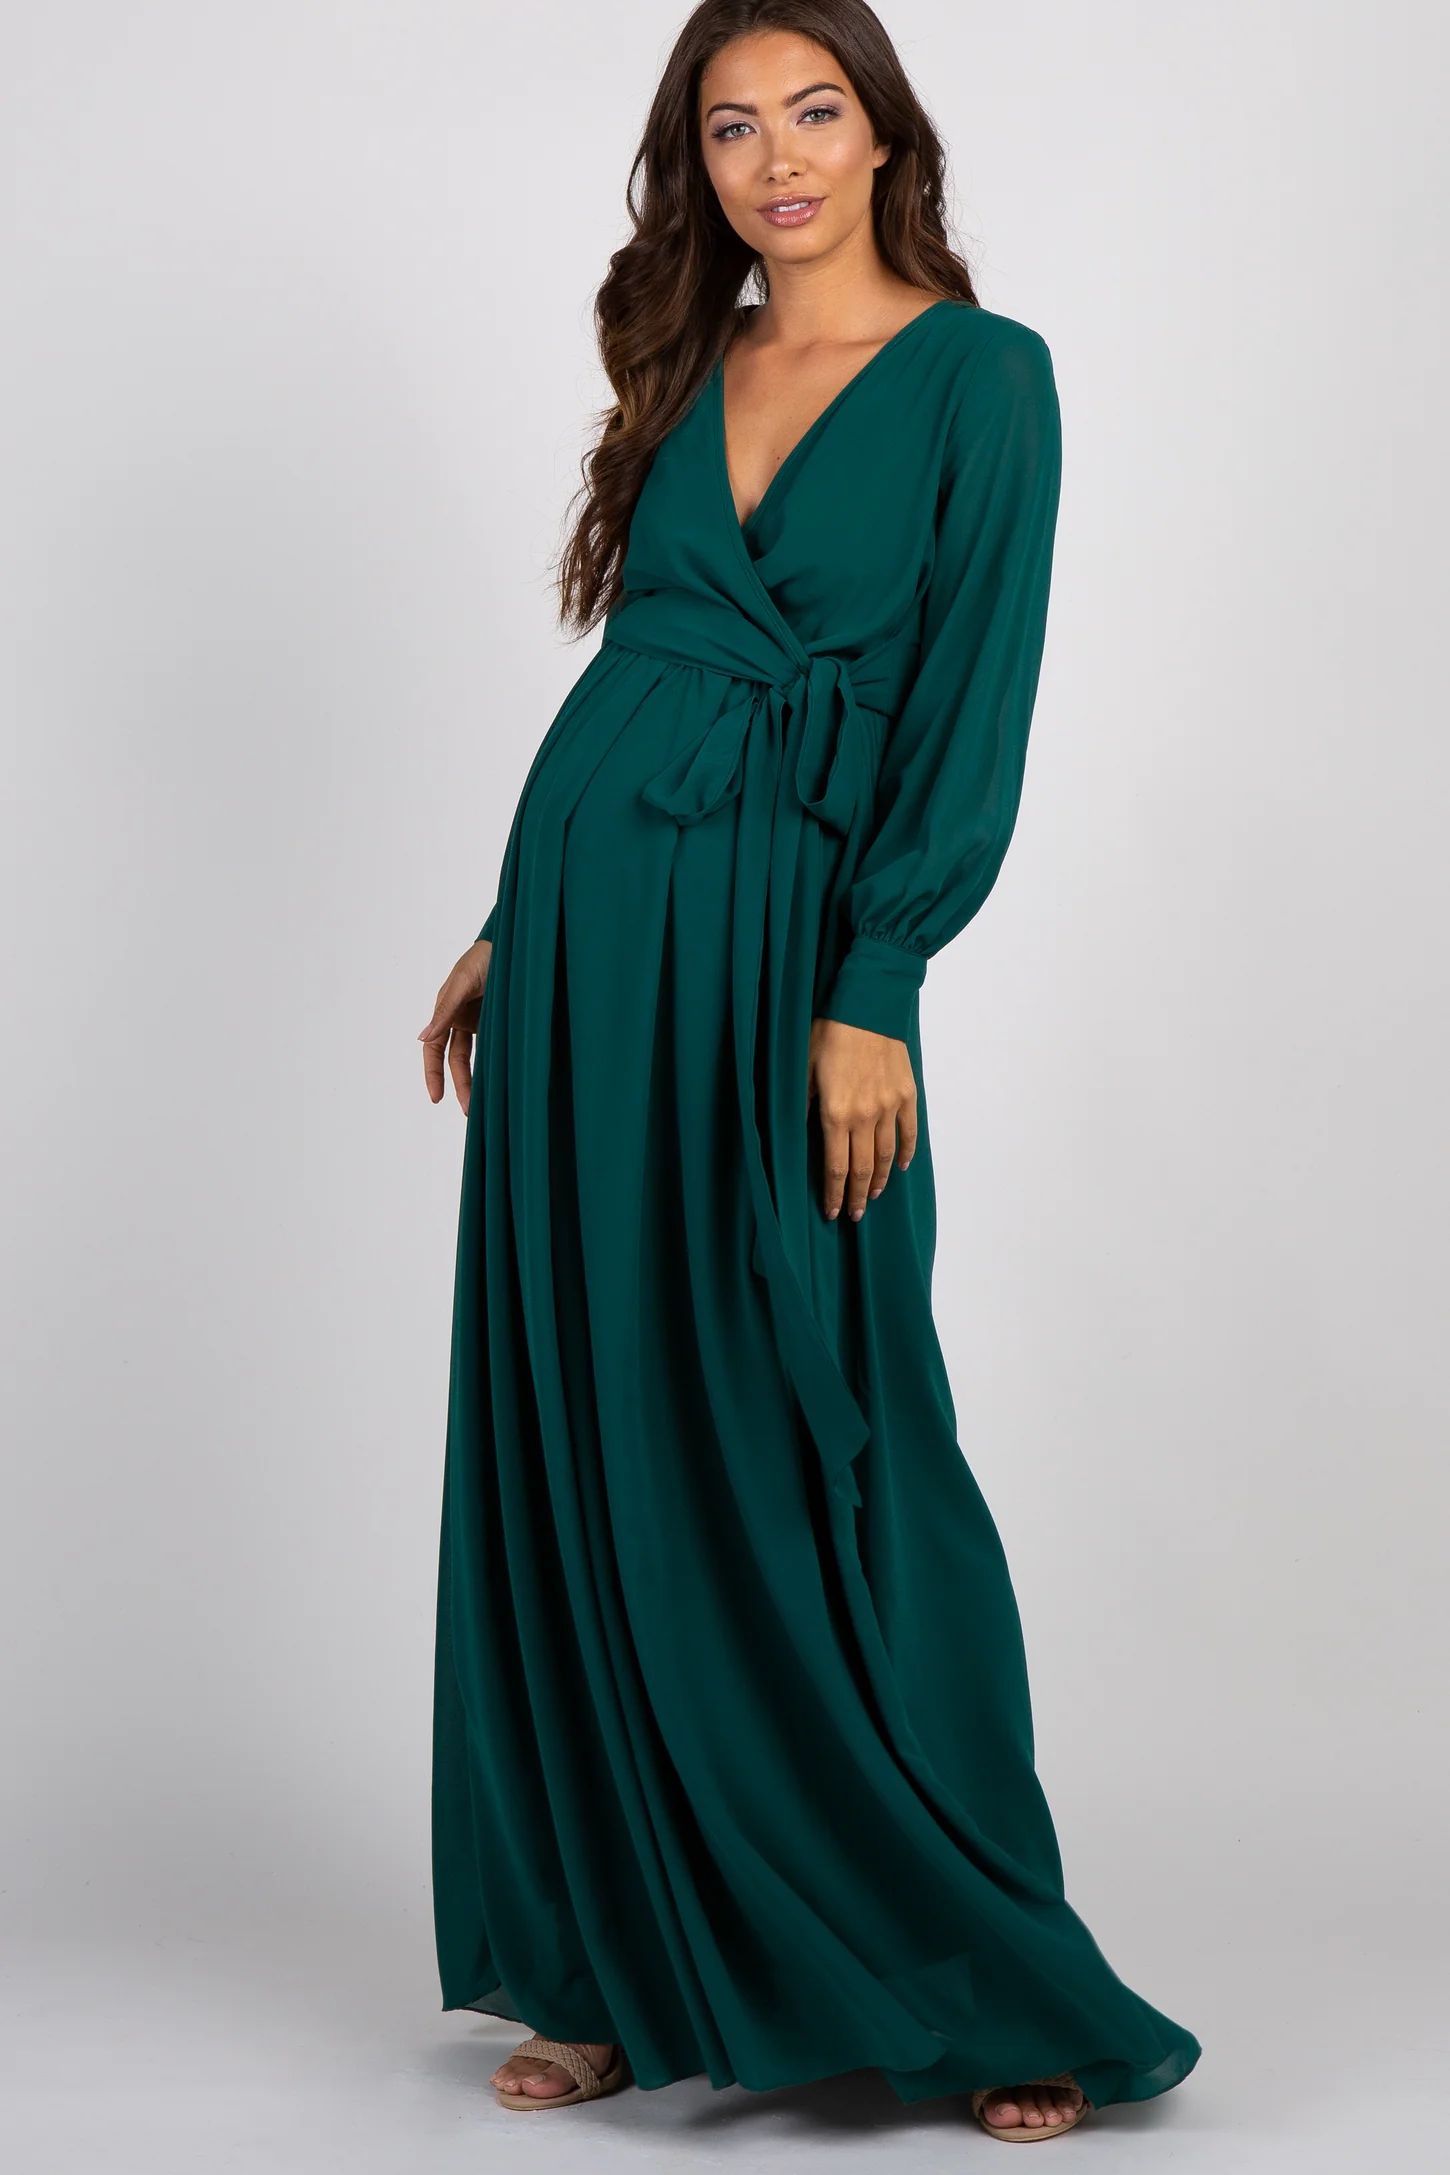 Green Chiffon Long Sleeve Pleated Maternity Maxi Dress | PinkBlush Maternity